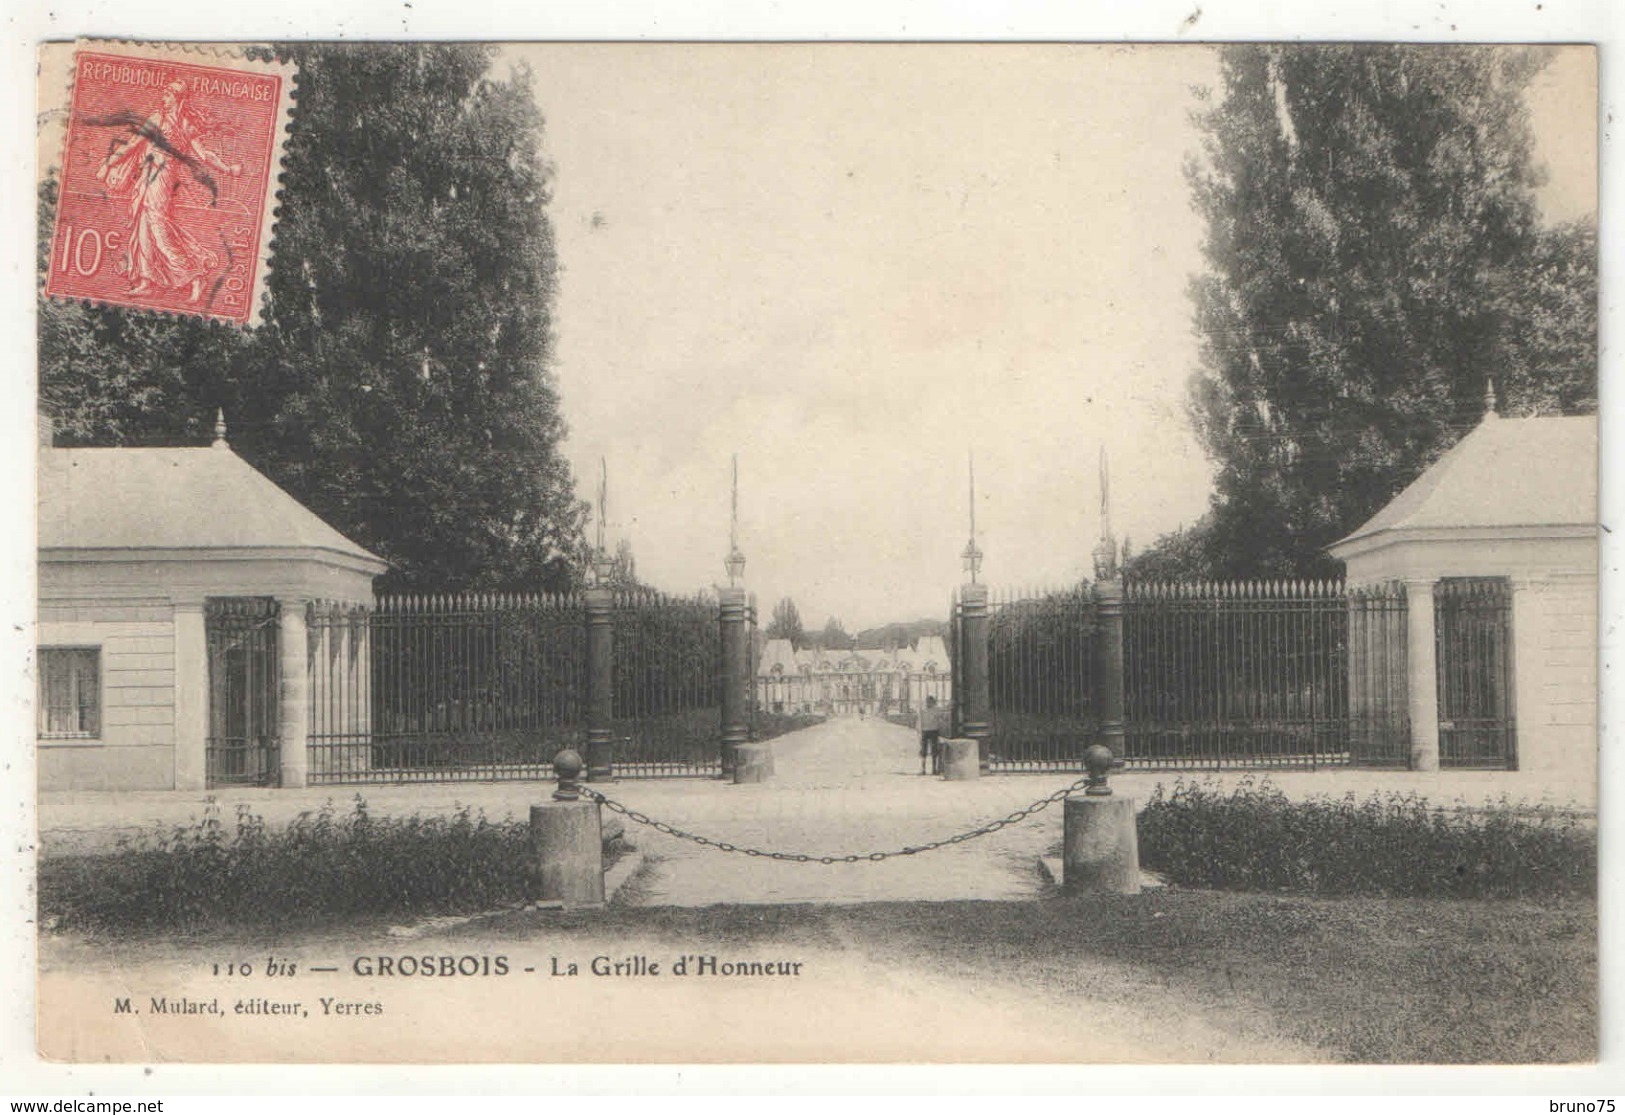 94 - GROSBOIS - La Grille D'Honneur - Mulard 110 Bis - Chateau De Grosbois